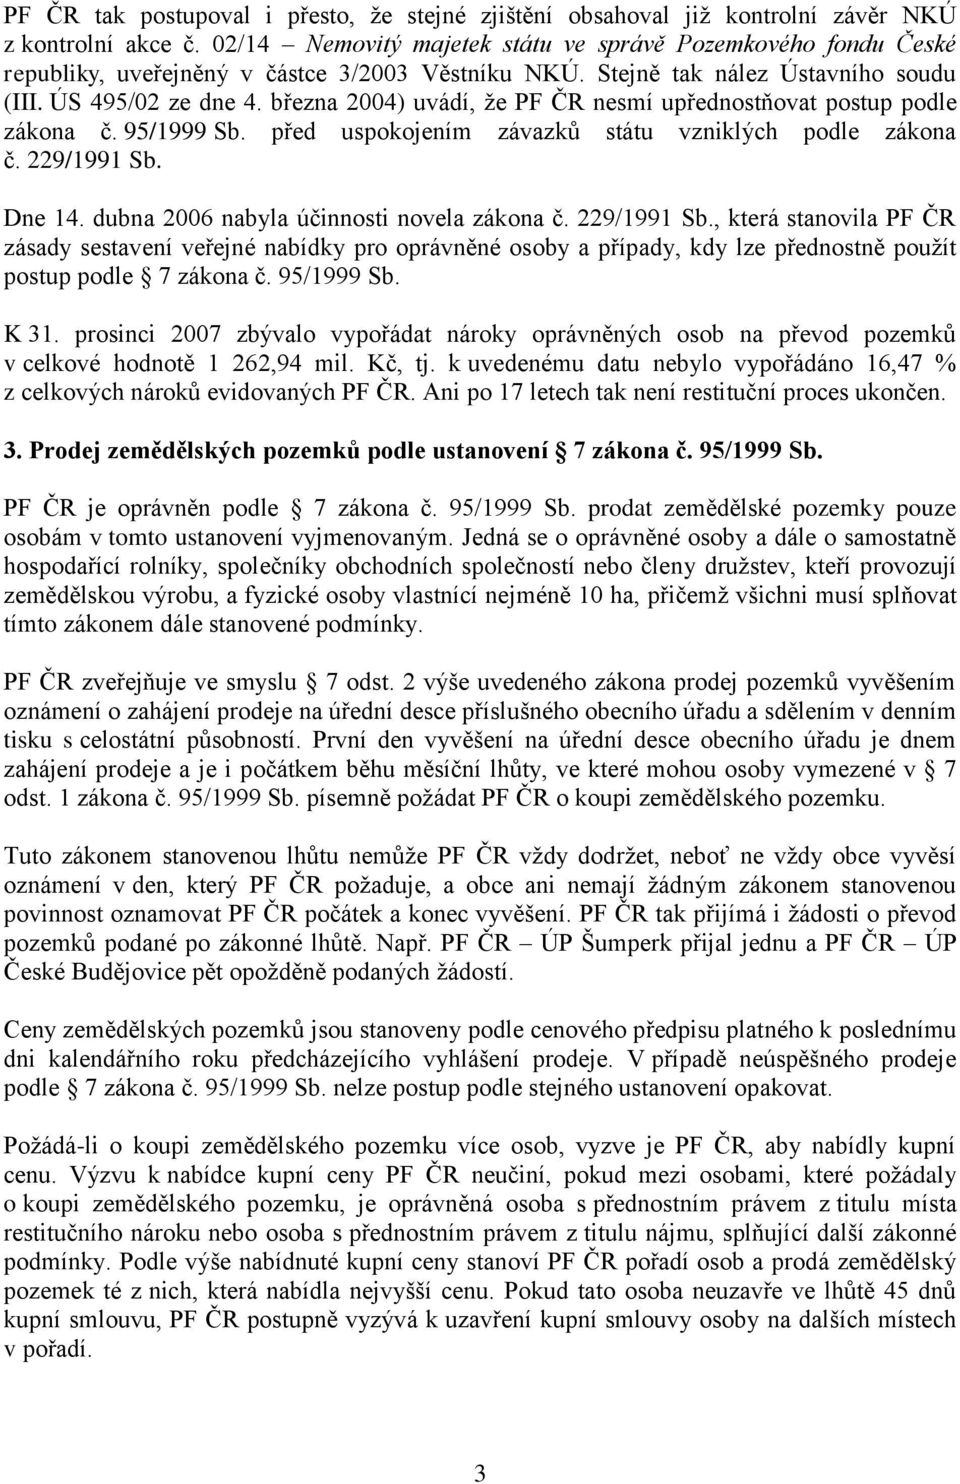 března 2004) uvádí, že PF ČR nesmí upřednostňovat postup podle zákona č. 95/1999 Sb. před uspokojením závazků státu vzniklých podle zákona č. 229/1991 Sb. Dne 14.